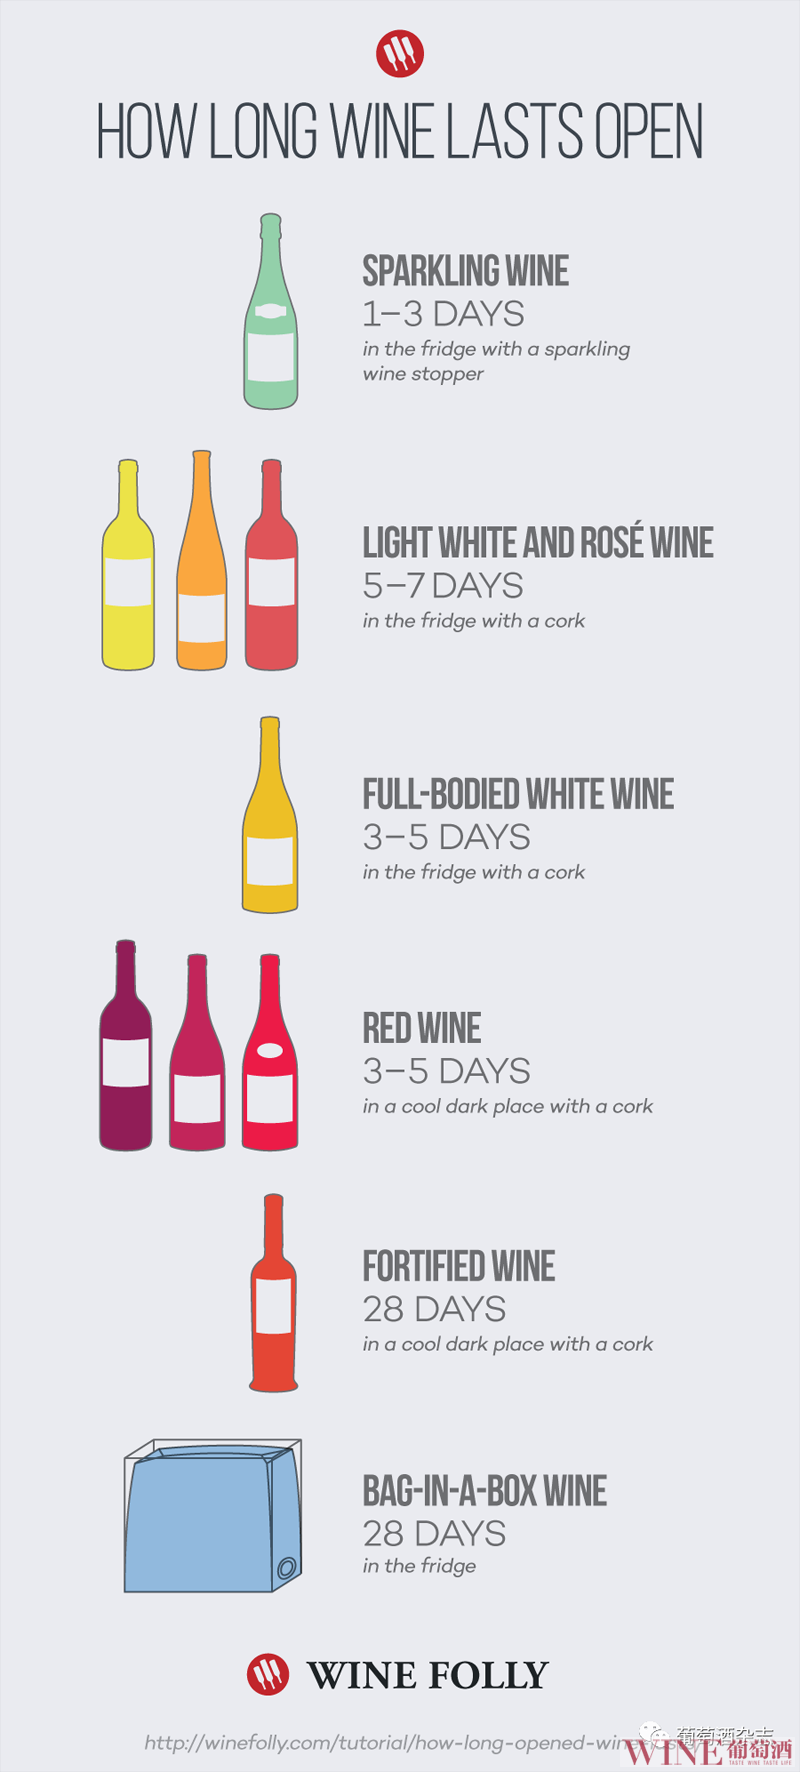 一瓶葡萄酒打开后能放几天？